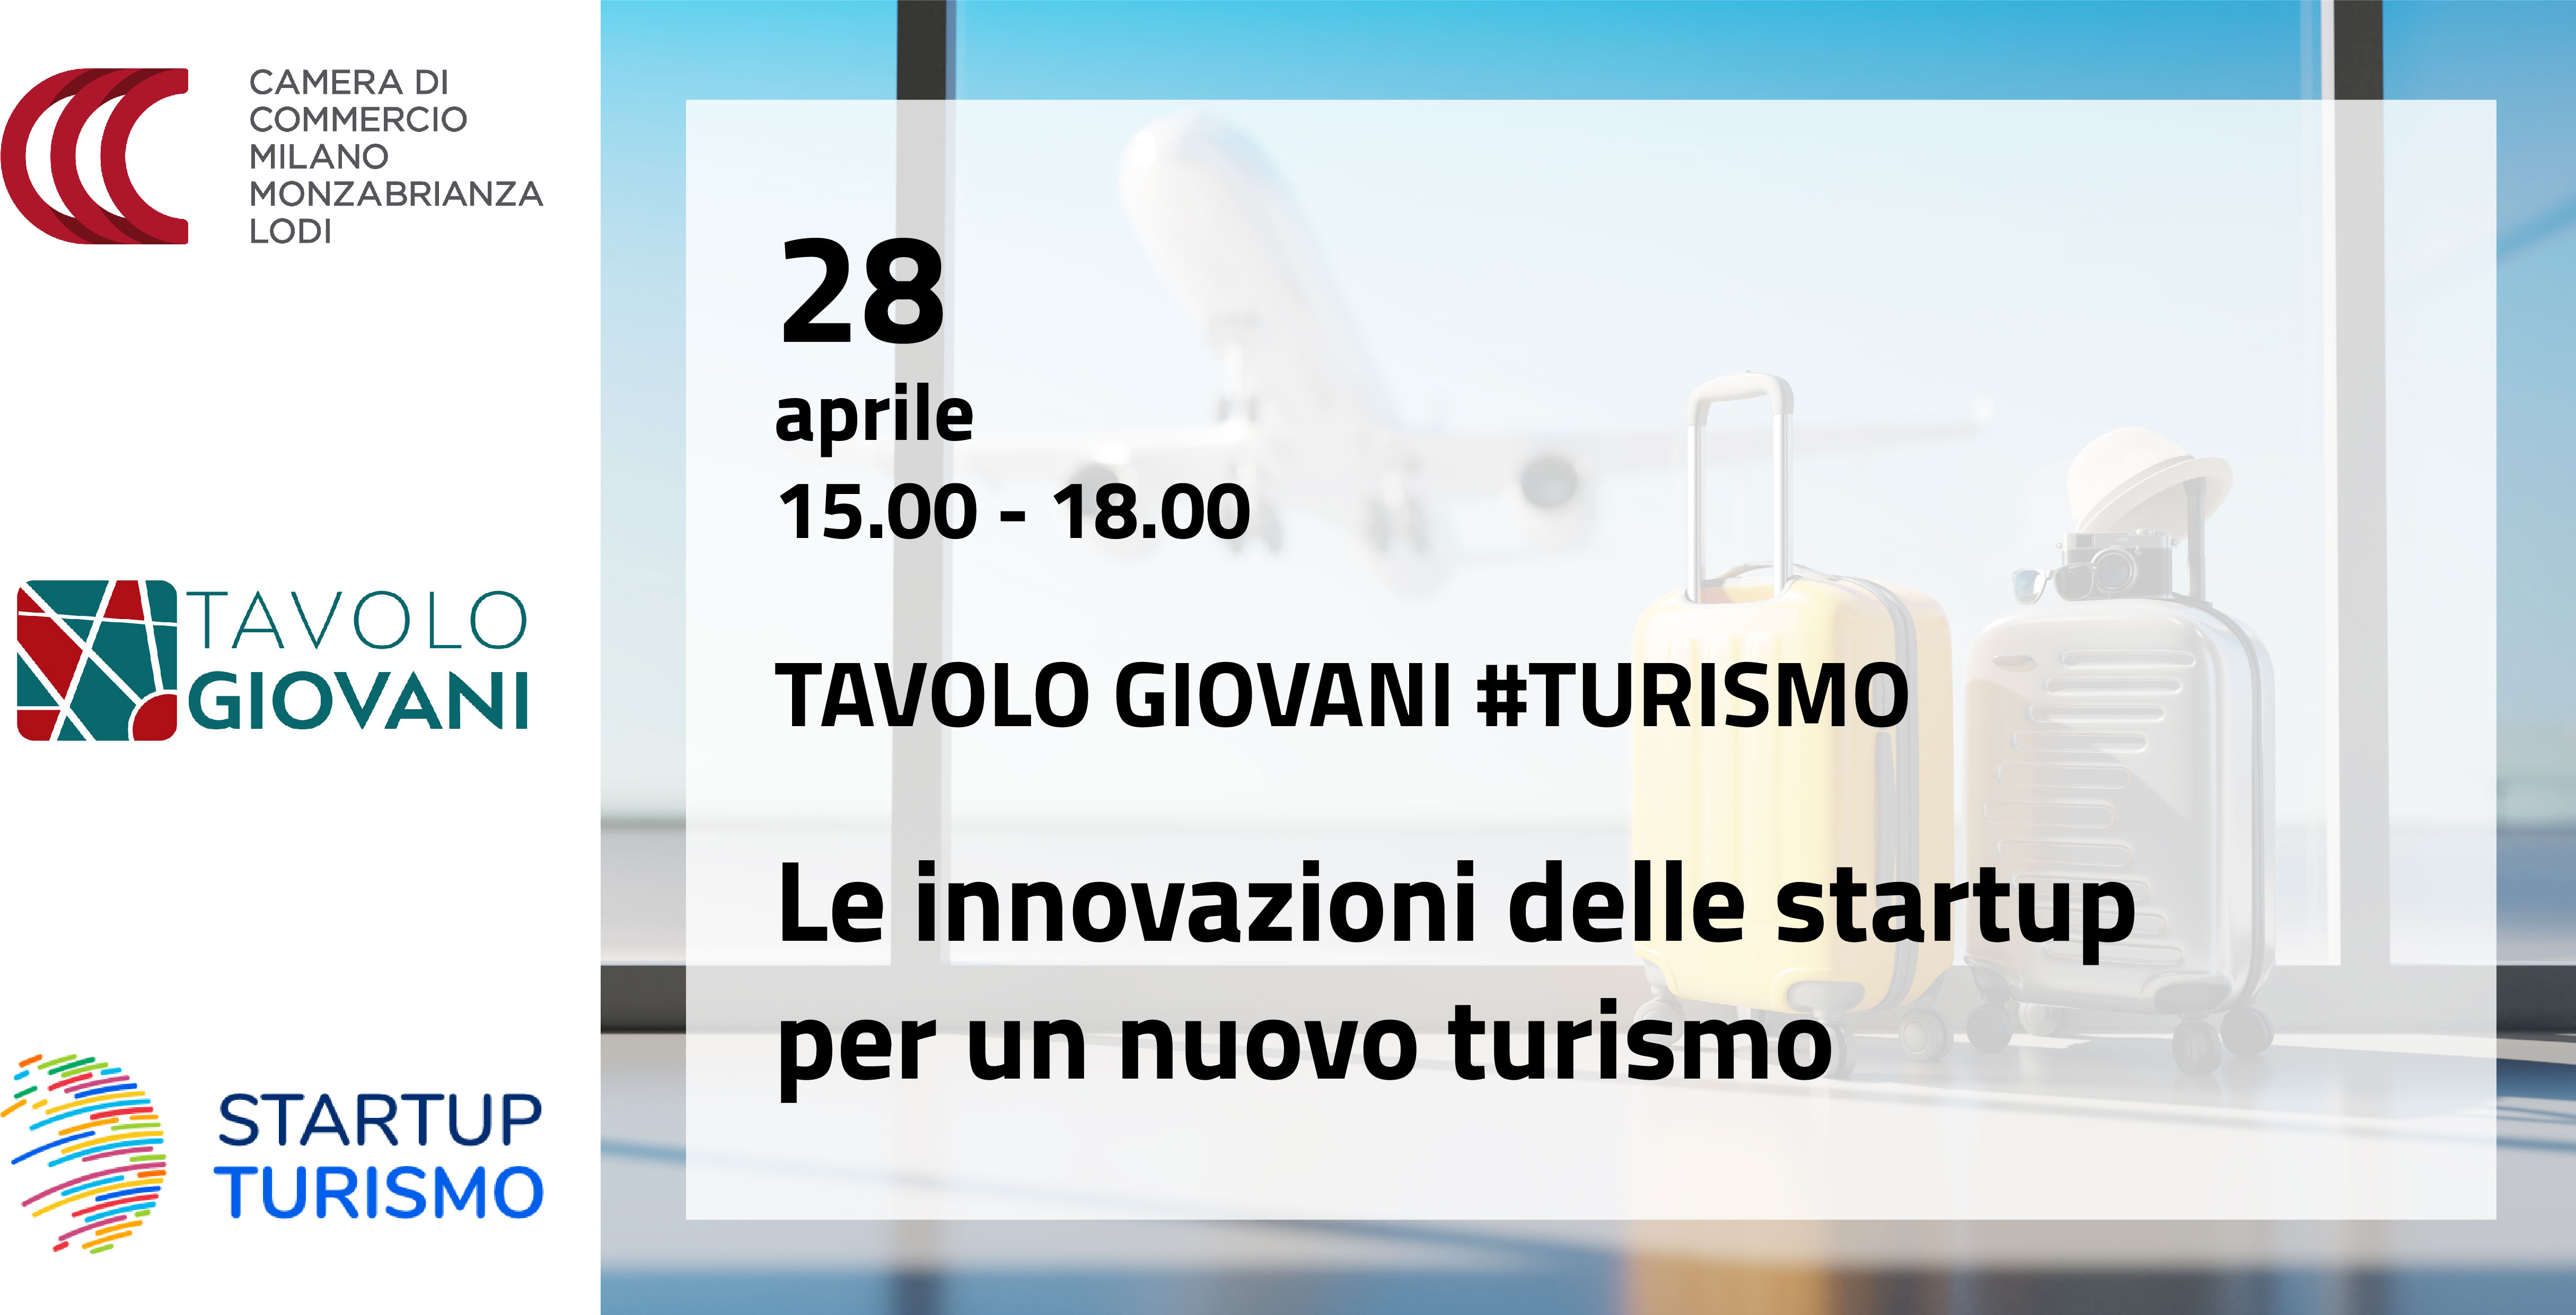 Invito evento Tavolo Giovani Turismo Palazzo Giureconsulti Milano